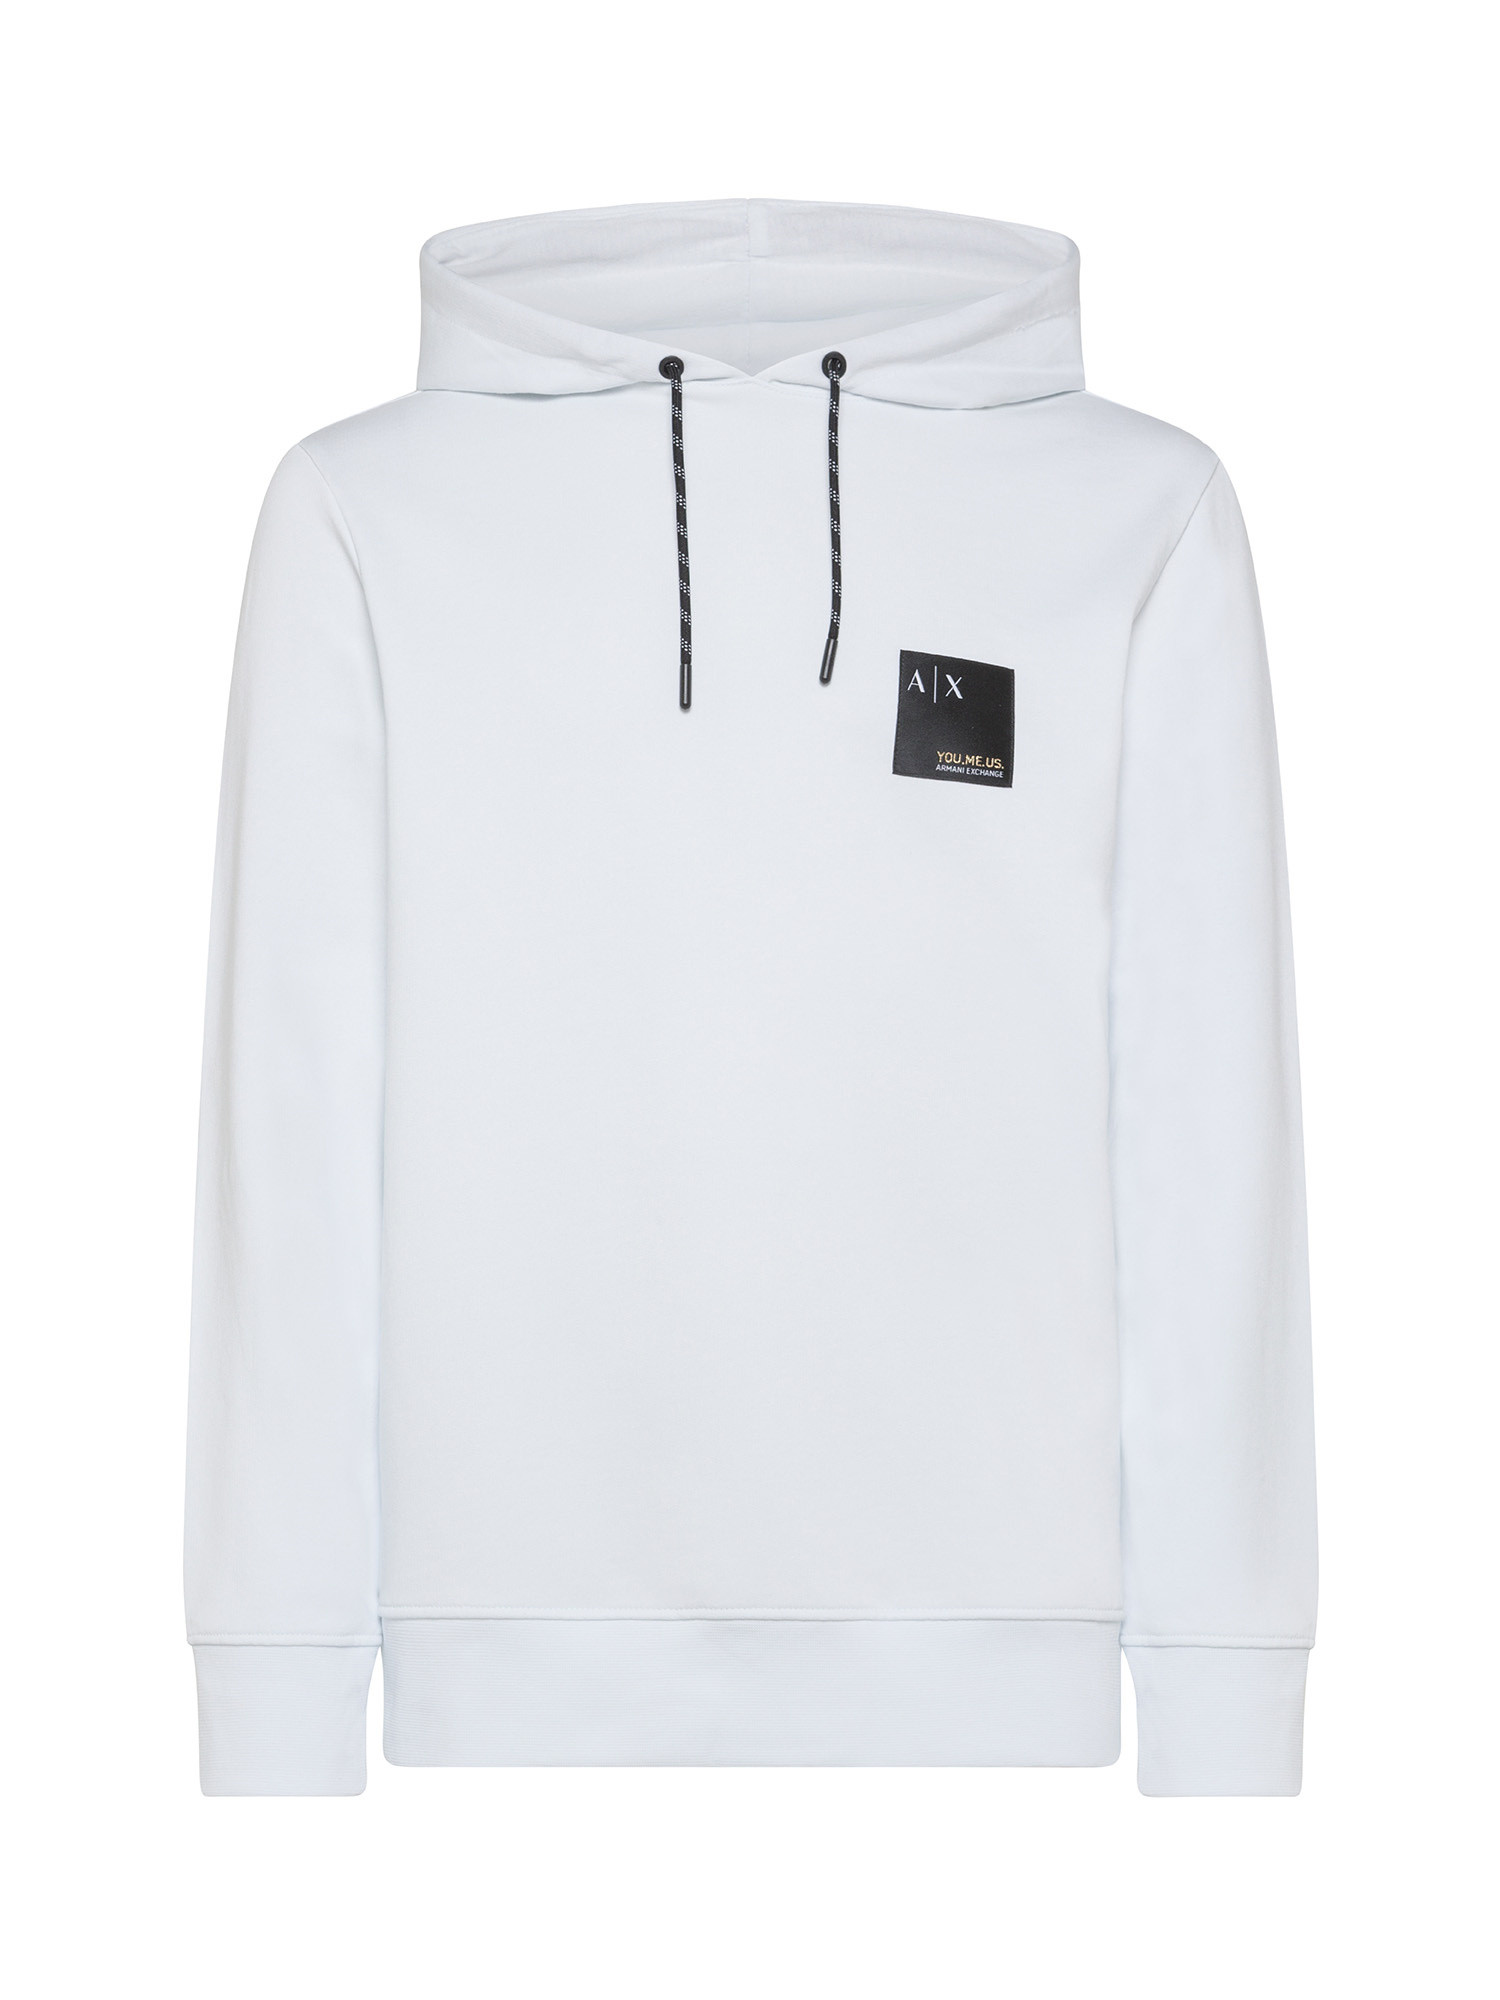 Armani Exchange - Sweatshirt with hood and logo, White, large image number 0